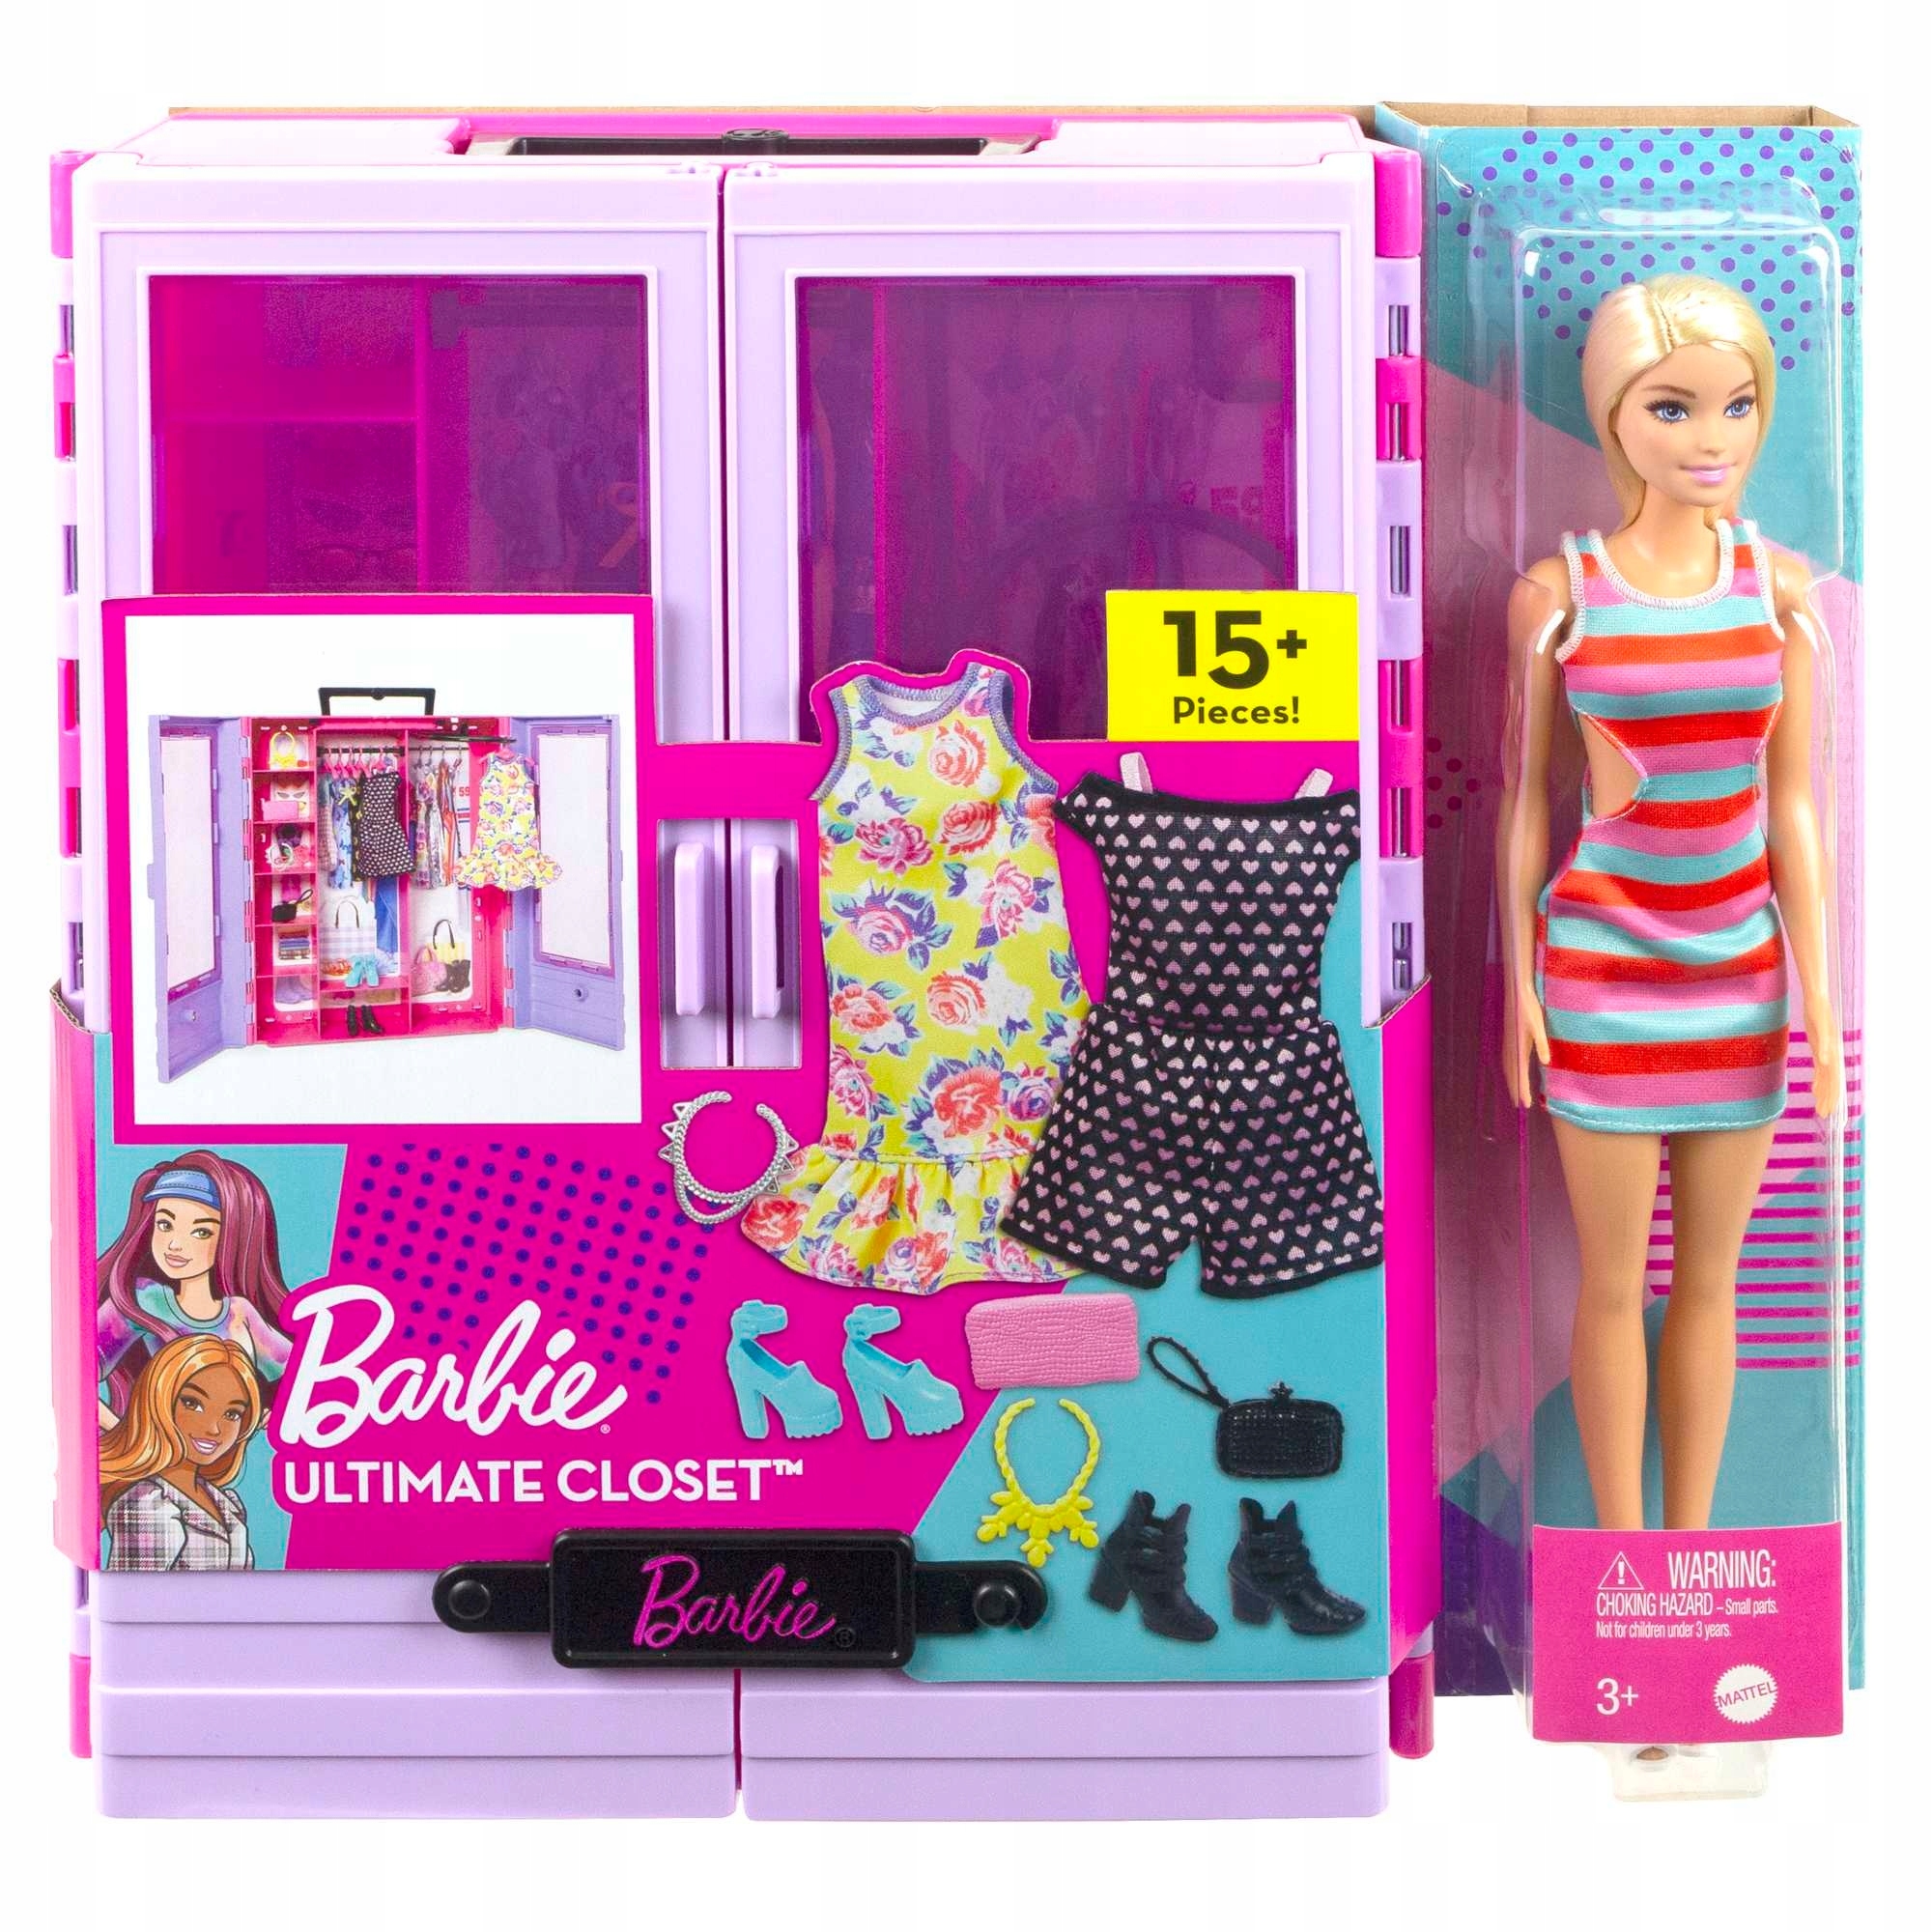 Гардероб барби. Barbie Fashionistas Ultimate Closet Accessory шкаф. Домик гардероб для Барби. Набор 4 Барби с аксессуарами. Гардероб для Барби ногти.